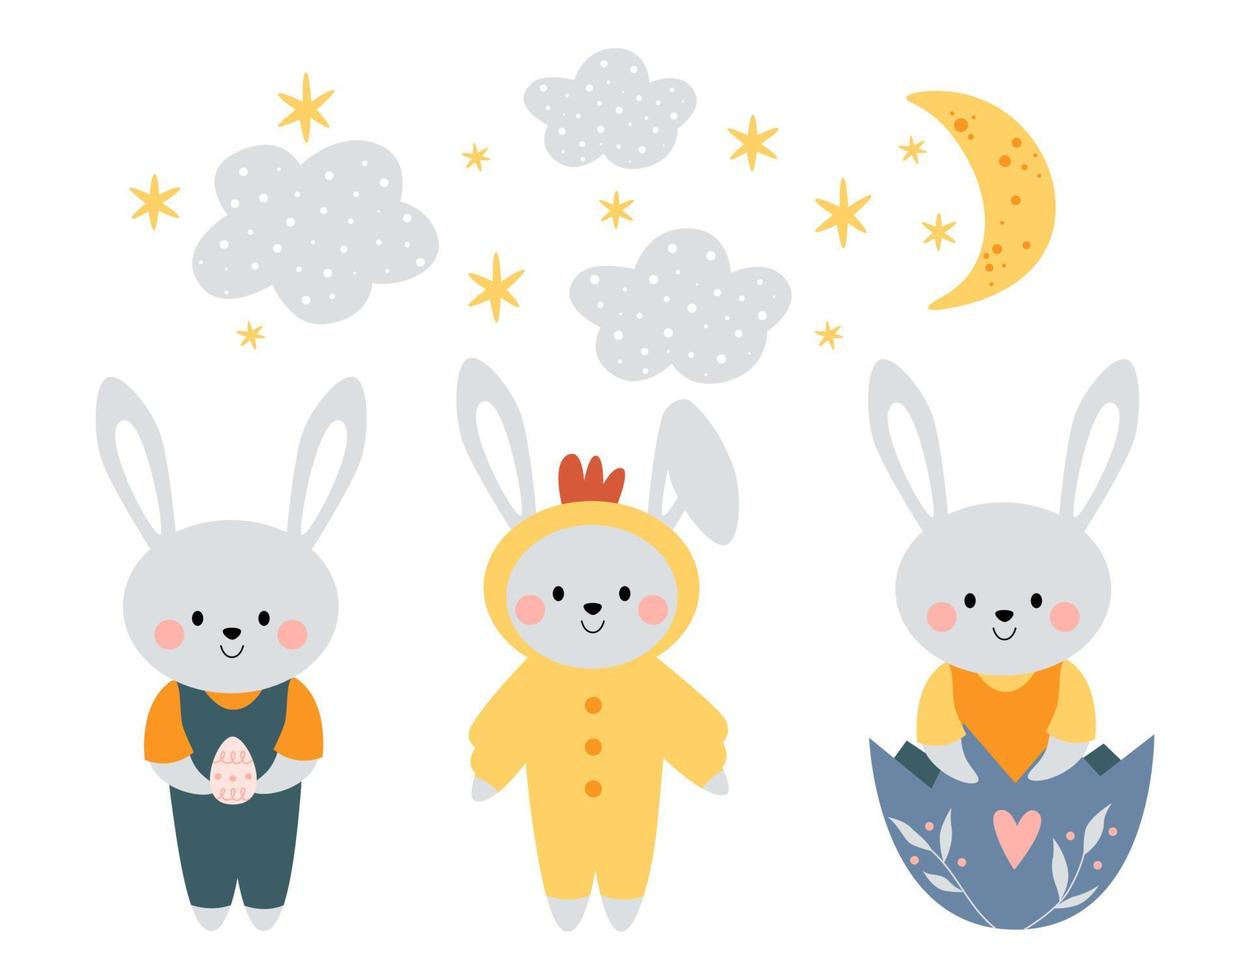 lapins mignons kawaii, lapins. un lapin dans un costume de poulet. un lapin dans une coquille d'oeuf. joyeuses Pâques. clipart pour cartes postales, impressions, bannières, modèles, médias sociaux, web. illustration de dessin animé de vecteur. vecteur